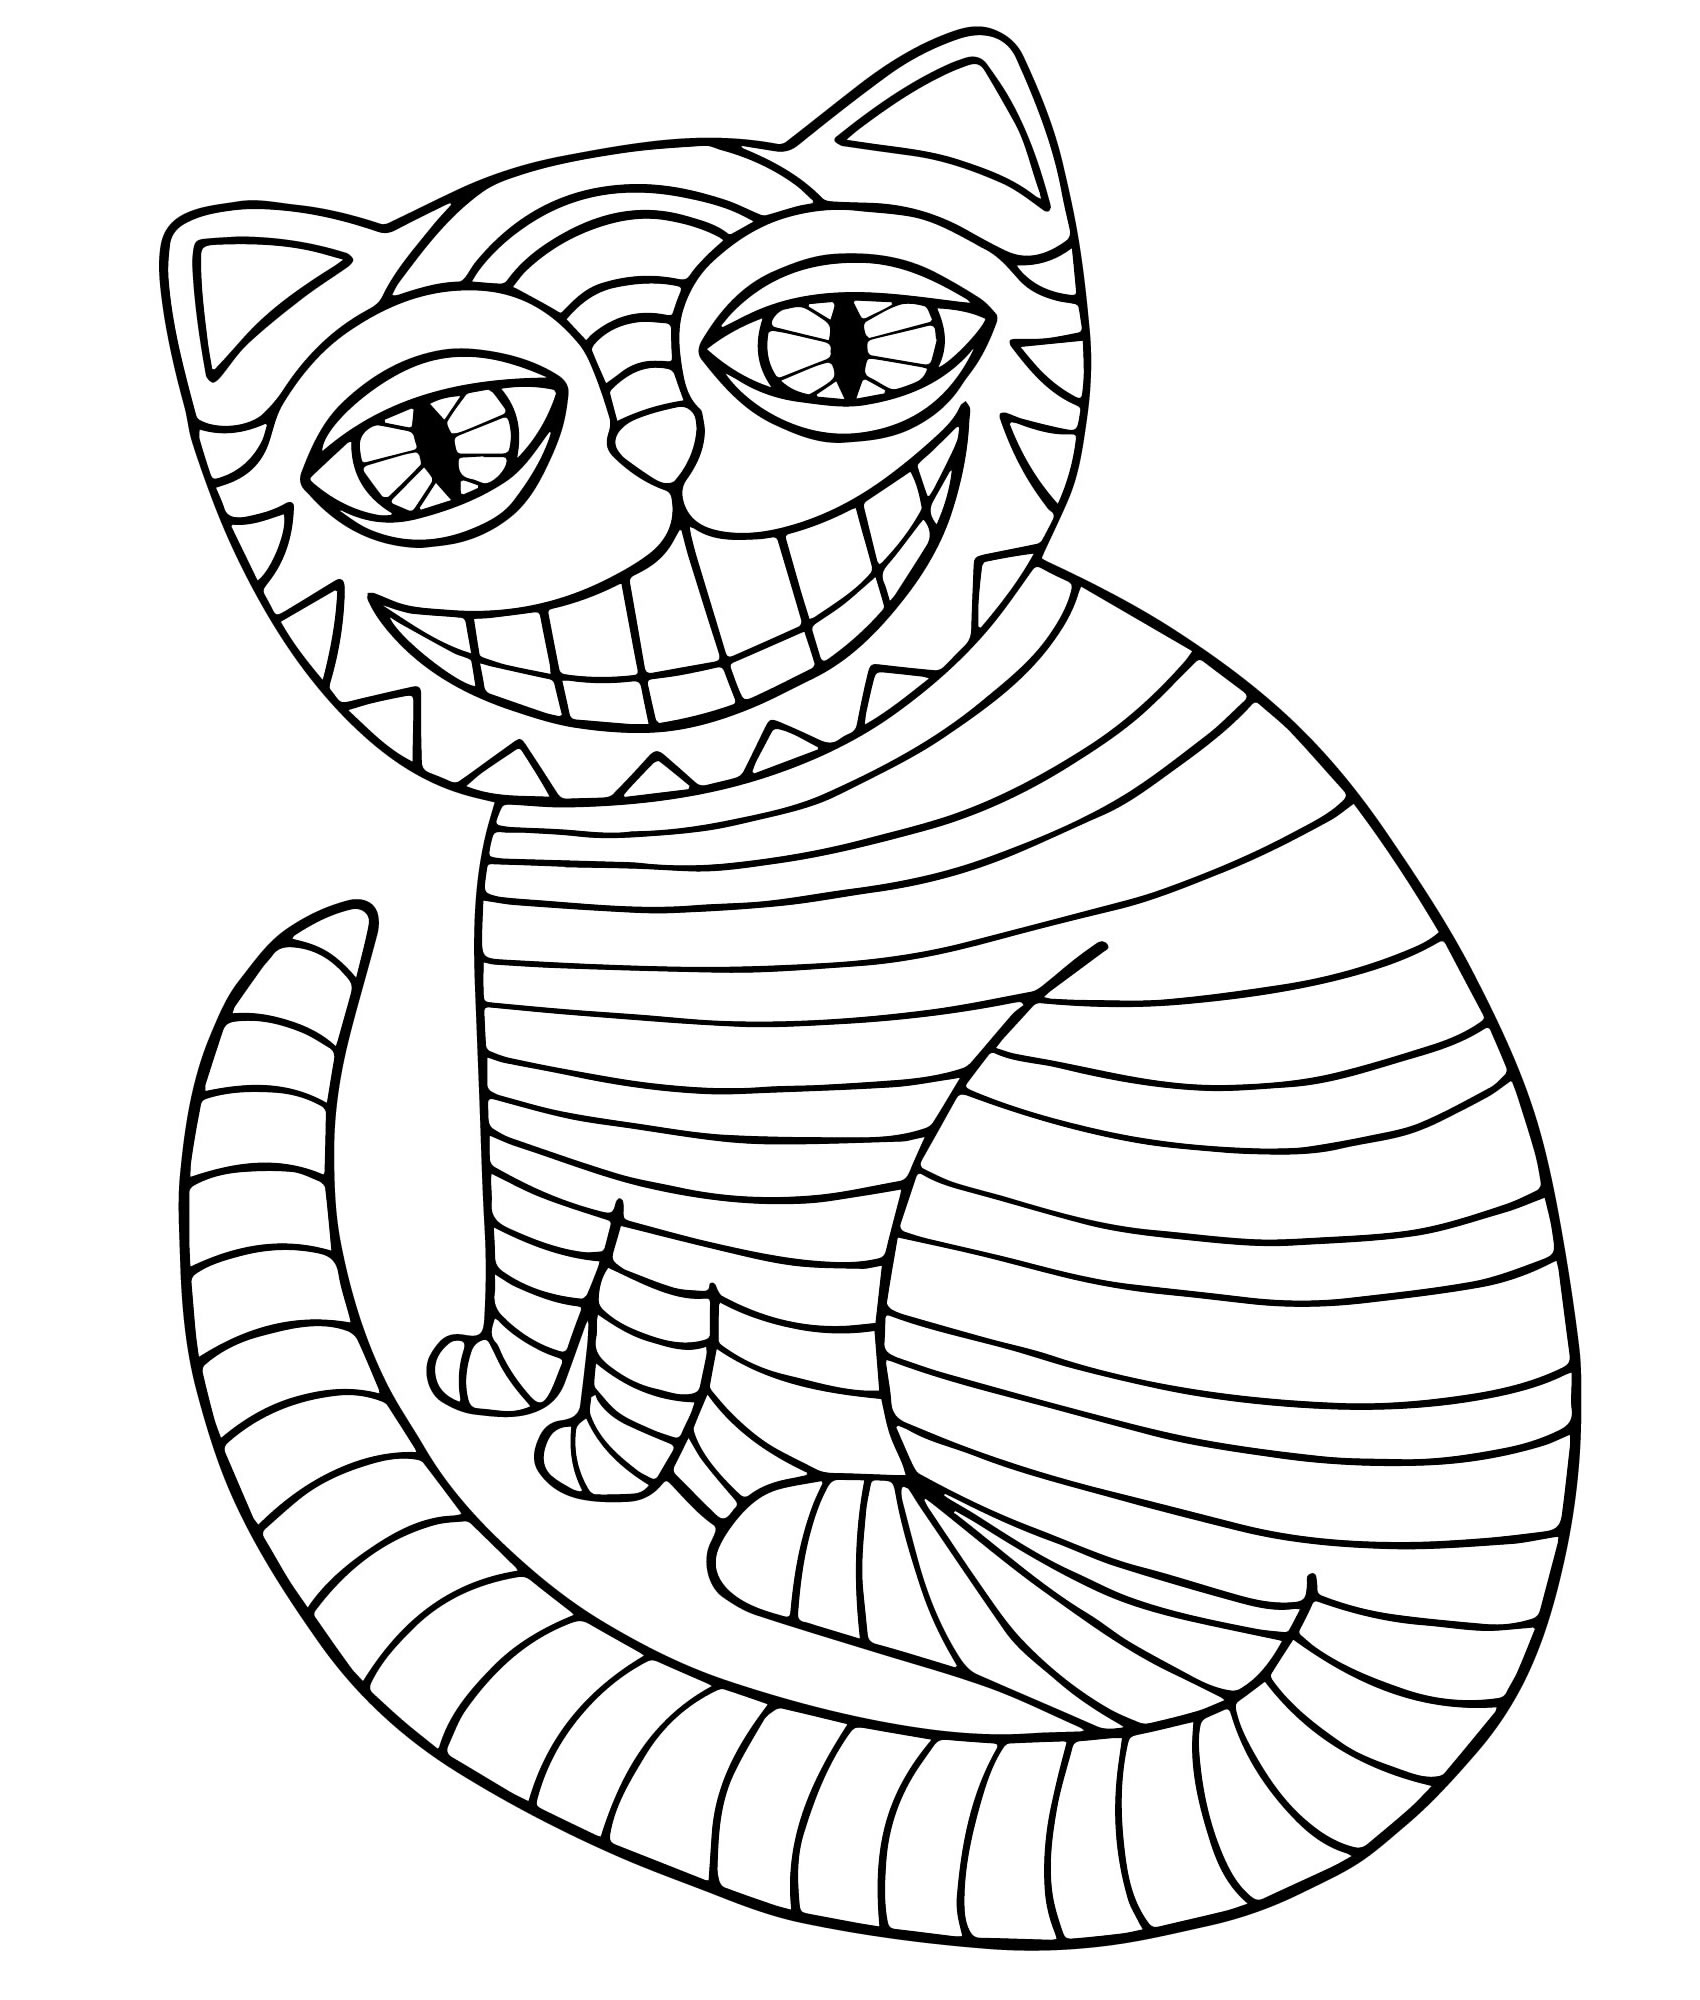 Чеширский кот - скачать и распечатать раскраску. Улыбка, кошка